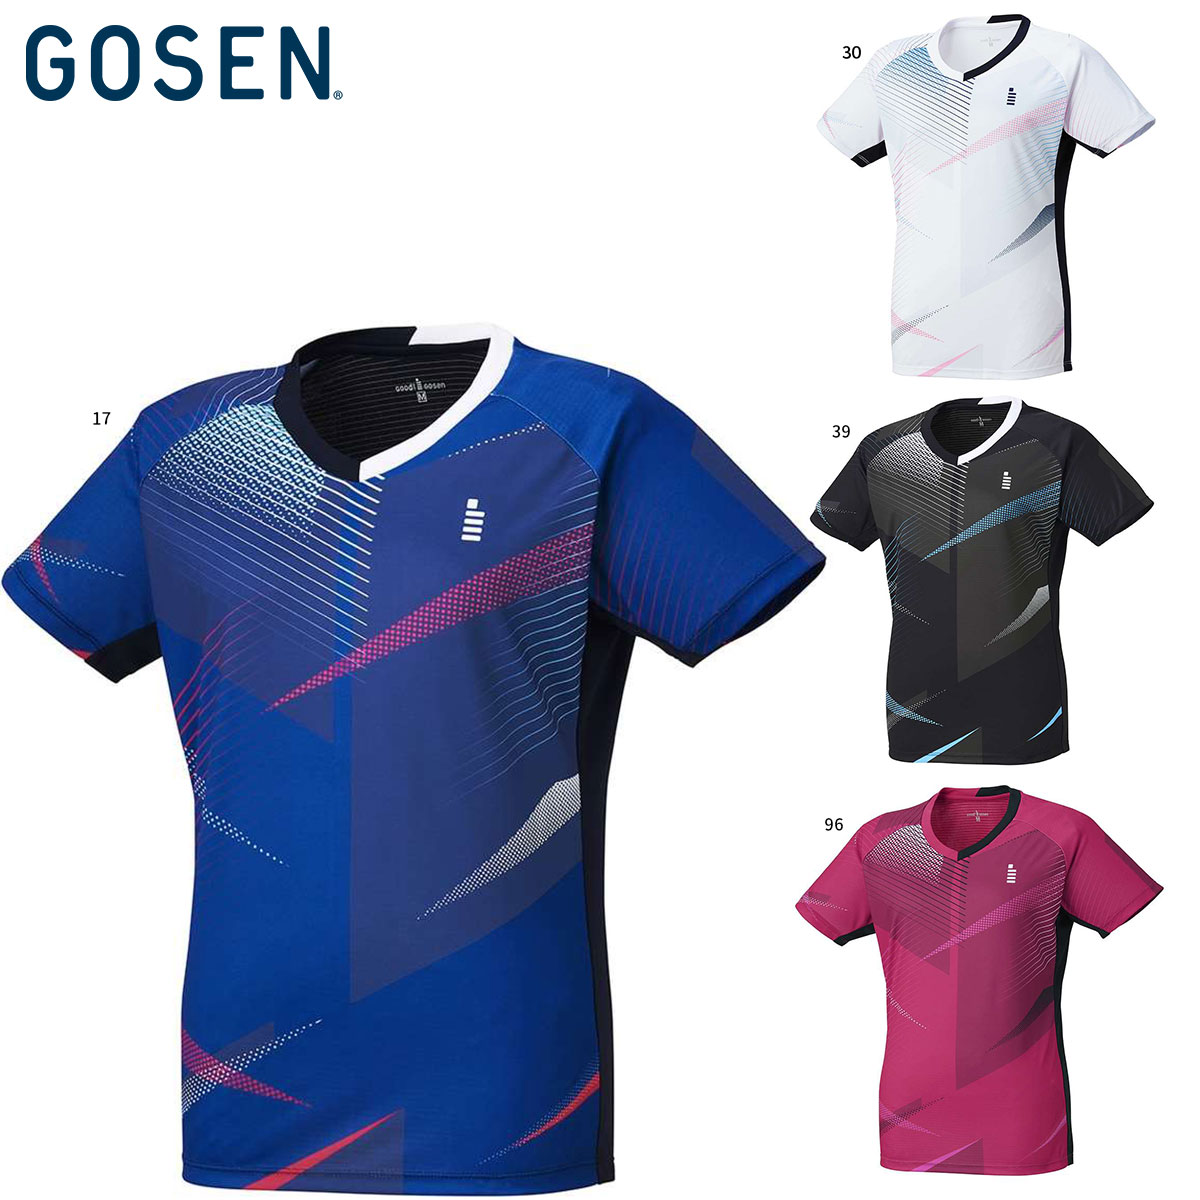 GOSEN T2301 ゲームシャツ(レディース) アパレル テニス・バドミントン ゴーセン